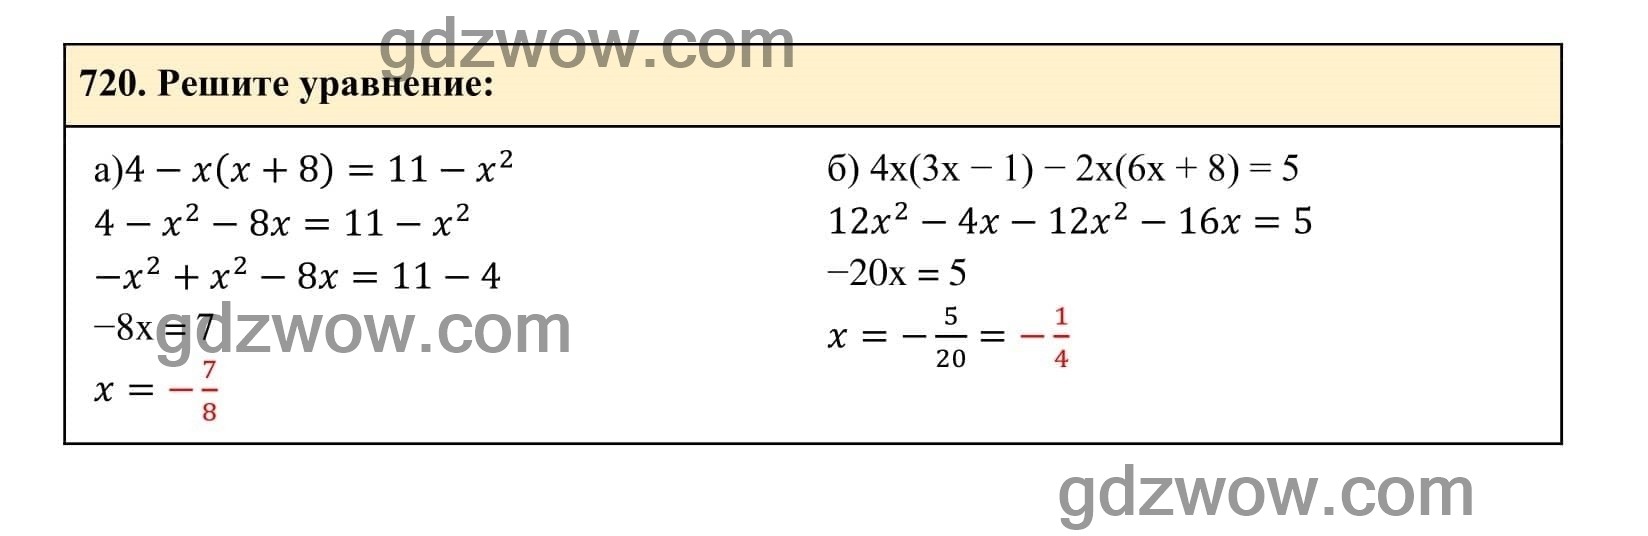 Упражнение 720 - ГДЗ по Алгебре 7 класс Учебник Макарычев (решебник) - GDZwow